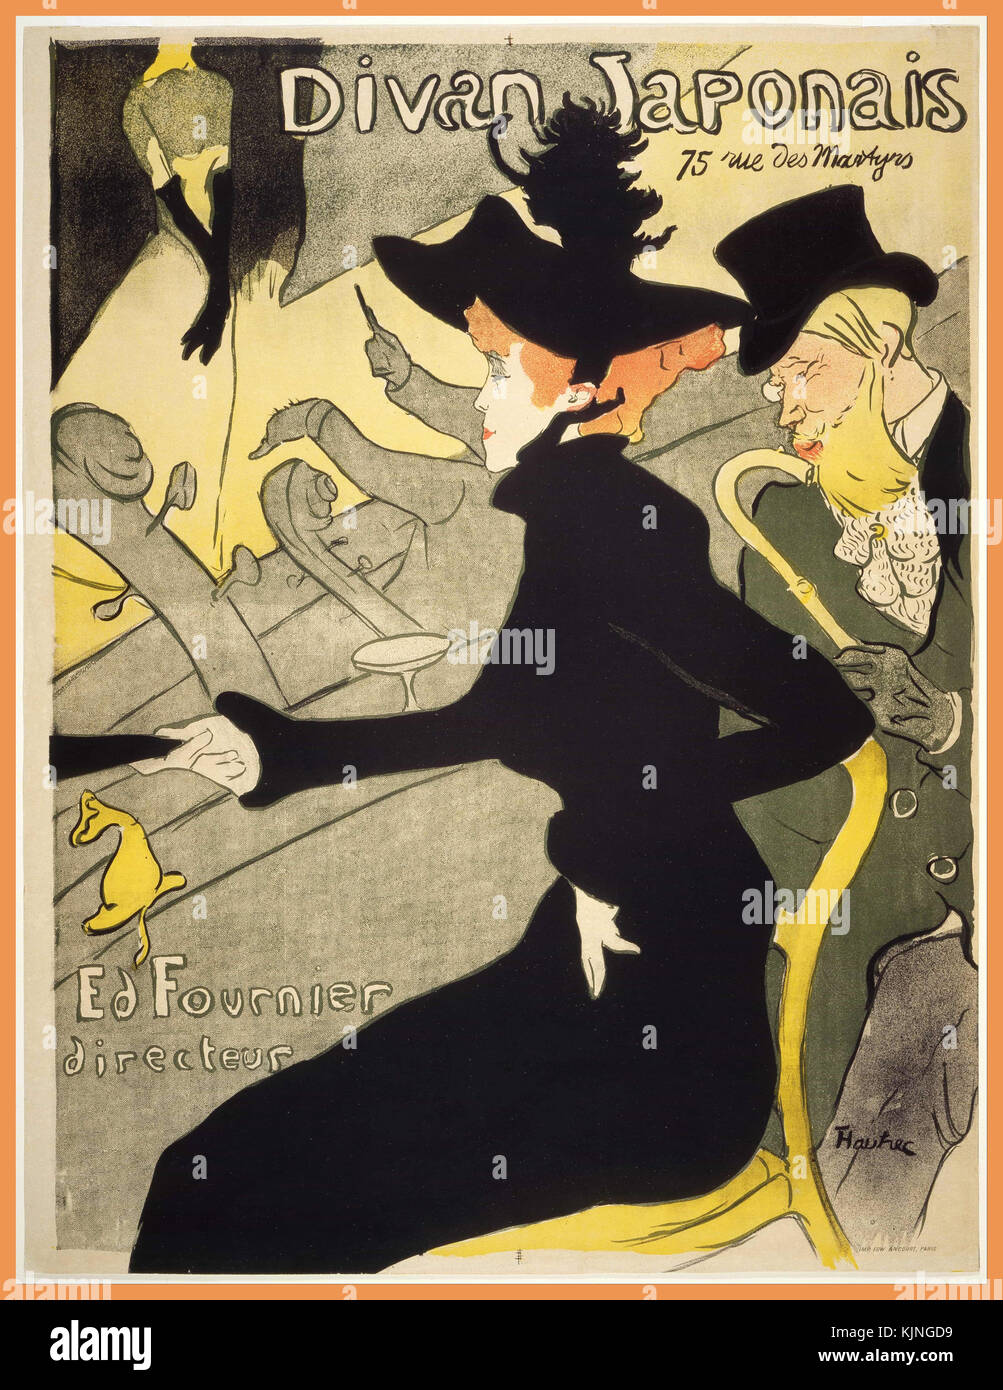 Vintage poster Toulouse Lautrec 'DIvan Japonais' une lithographie poster par l'artiste français Henri de Toulouse-Lautrec il a été créé pour annoncer un café-chantant qui était à l'époque connue sous le nom de Divan japonais l'affiche illustre trois personnes de l'Montmartre de Toulouse-Lautrec. circa 1893-1894 Banque D'Images